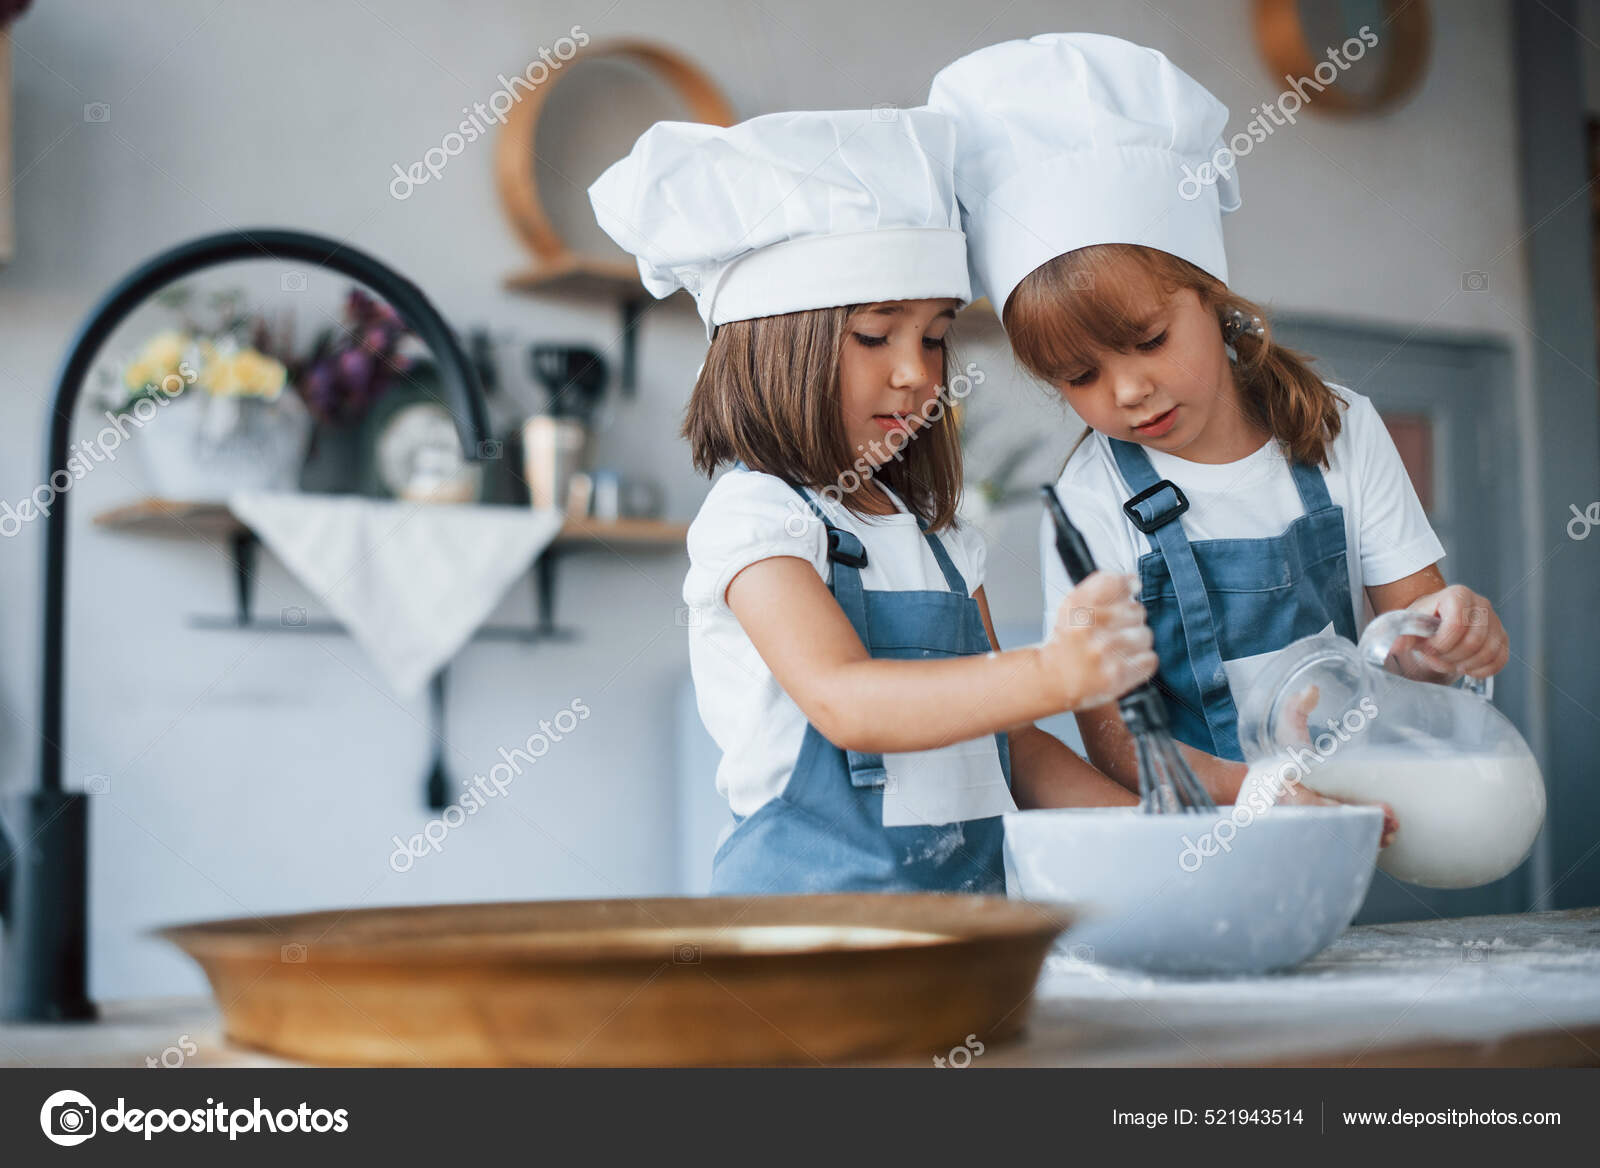 Niños Familia Uniforme Chef Blanco Preparando Comida Cocina: fotografía stock © myronstandret #521943514 |